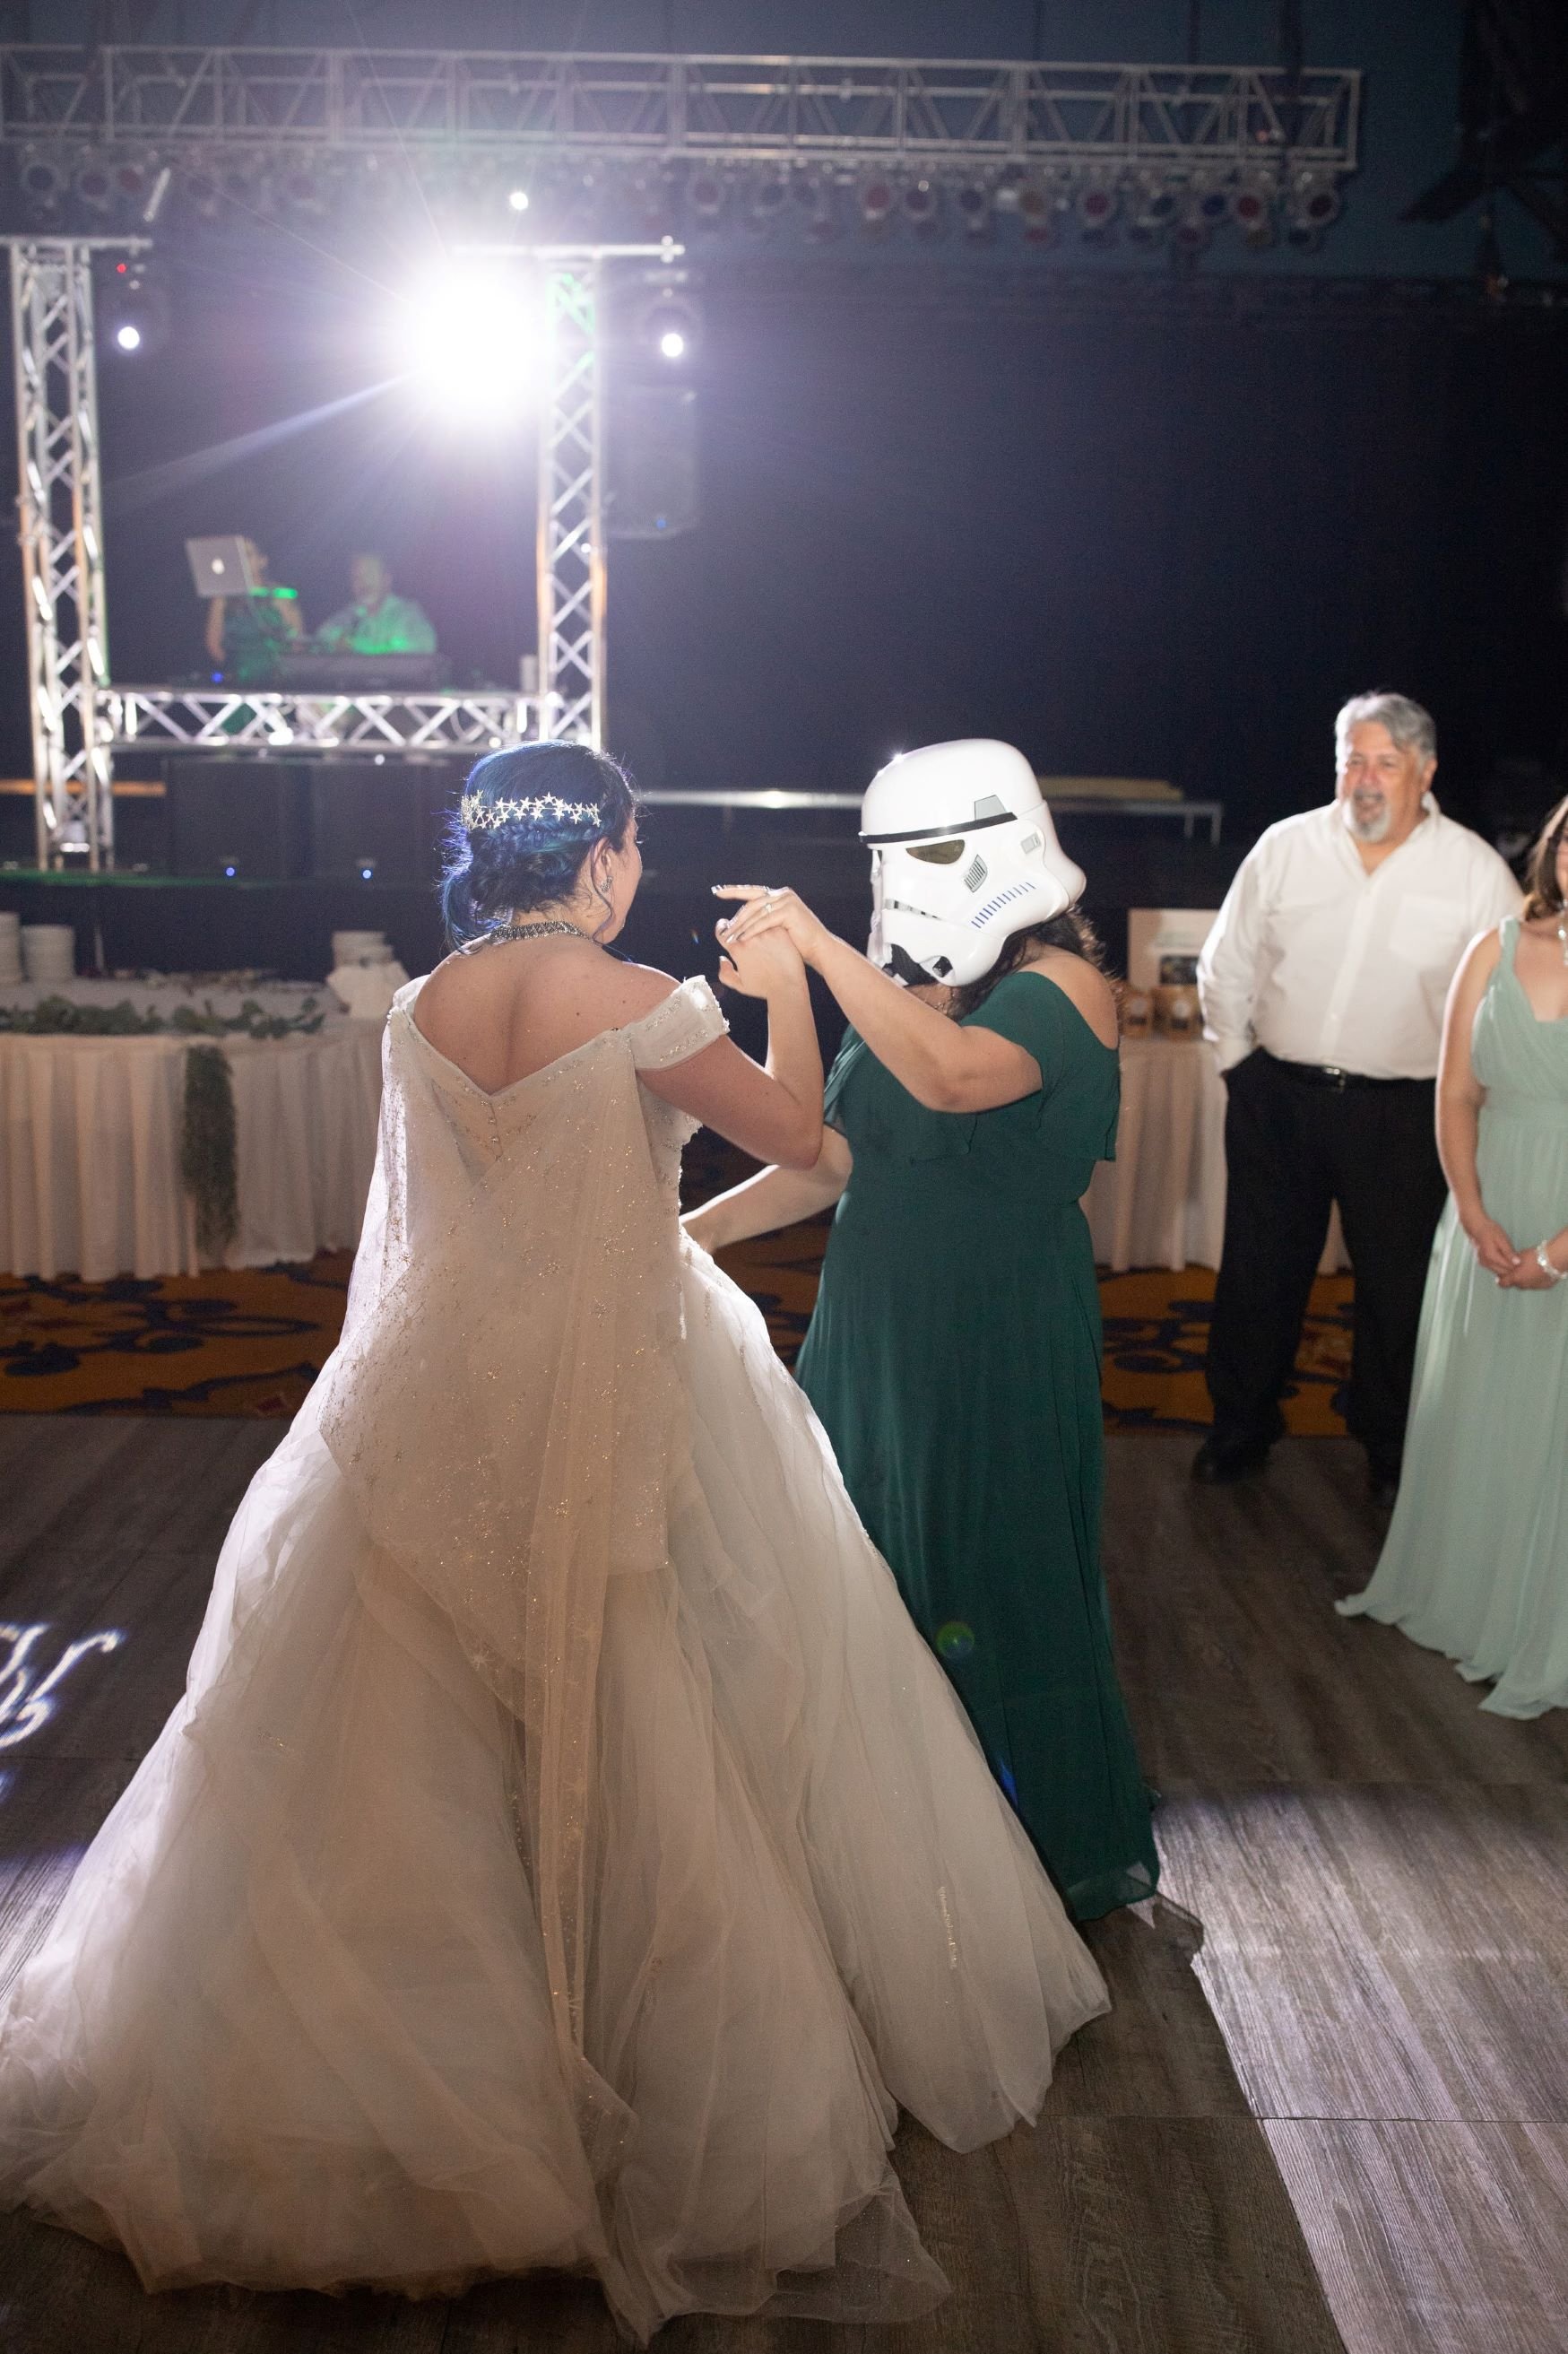 Bride and stromtrooper dancing.jpg